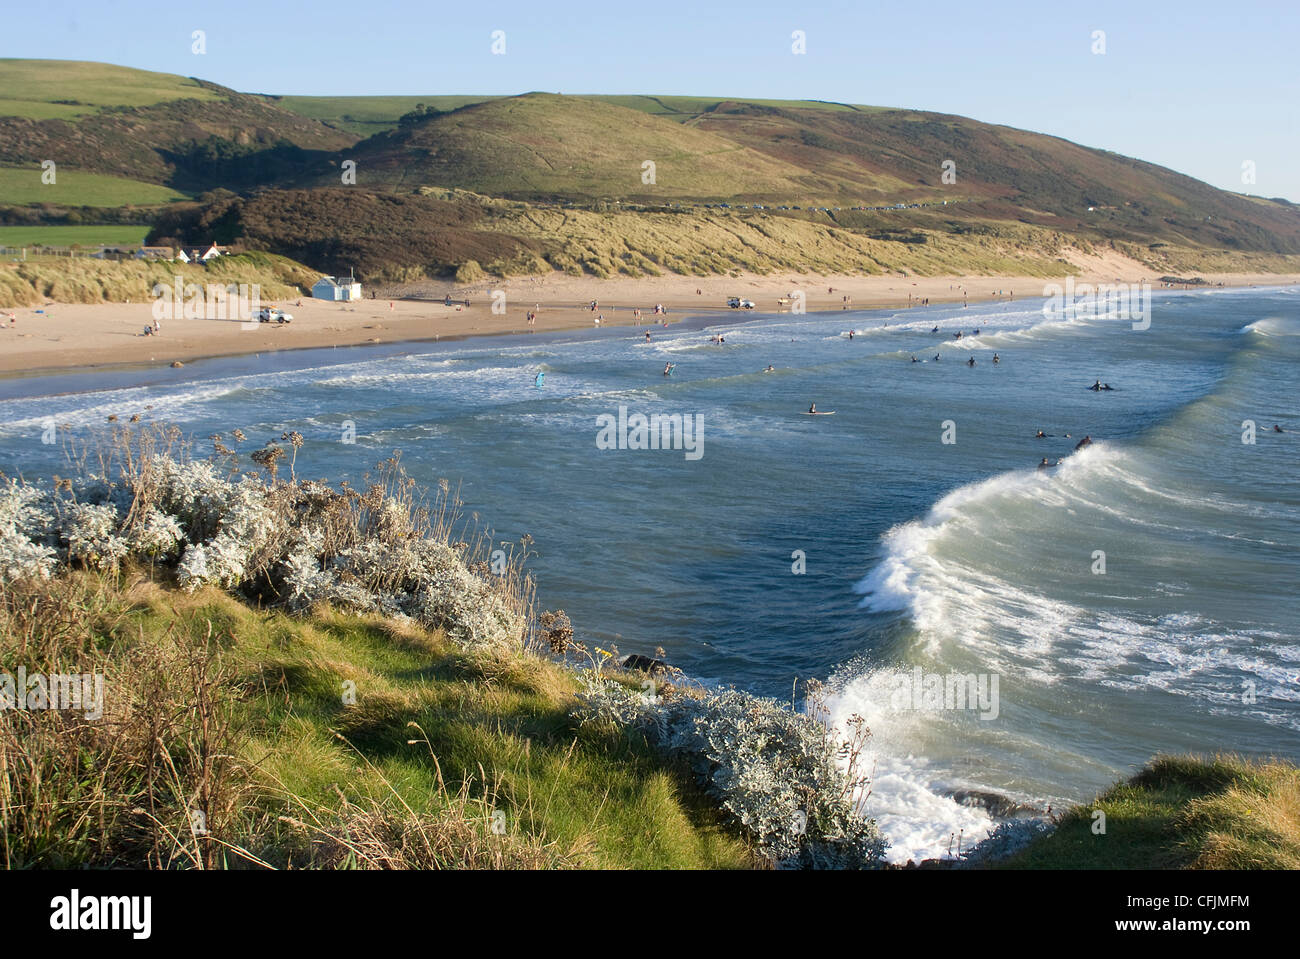 La plage des surfeurs à Woolacombe, Devon, Angleterre, Royaume-Uni, Europe Banque D'Images